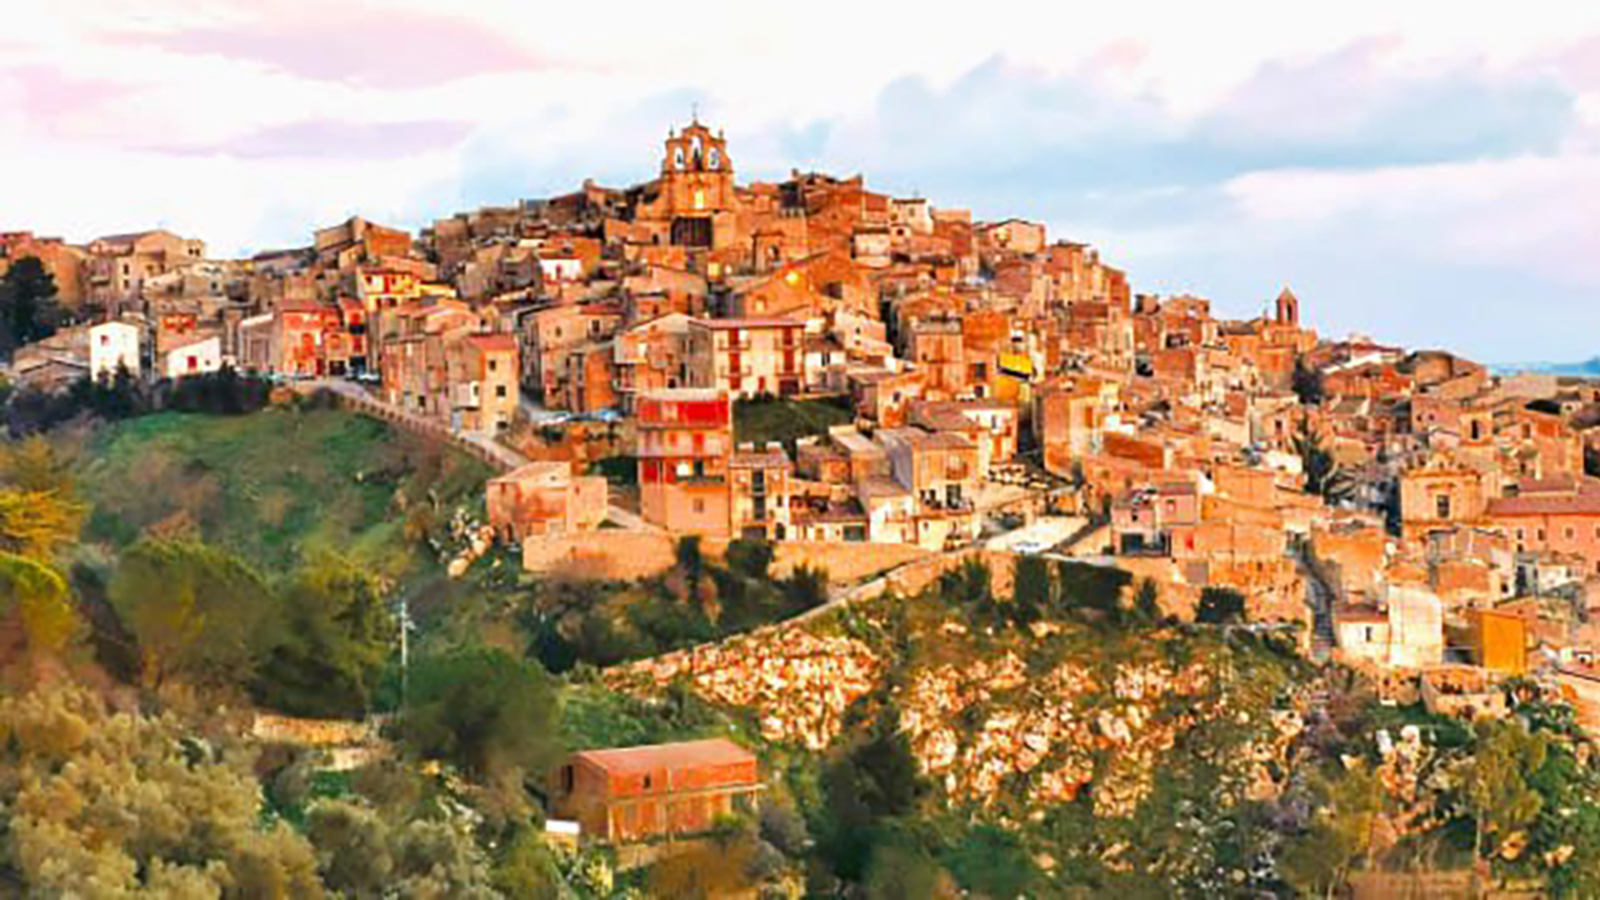 COVID-19 afectó aventura de extranjeros que compraron casas por $1 en Italia  | Sociedad | La Revista | El Universo